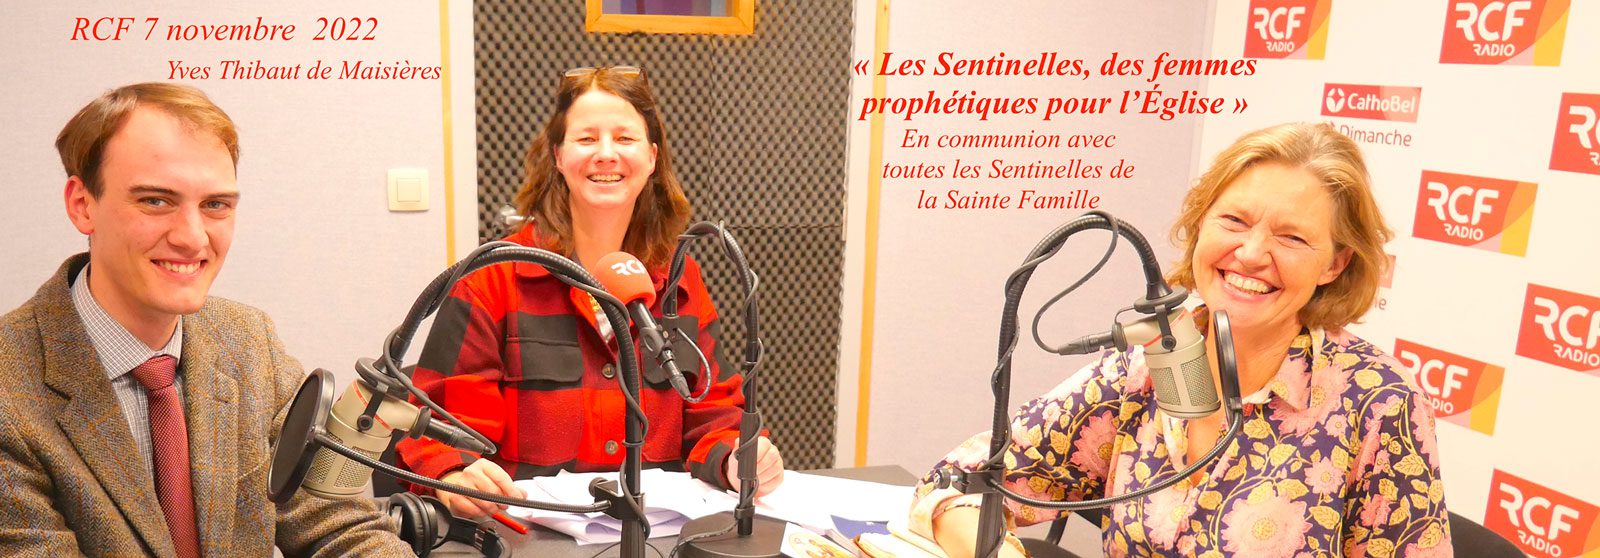 RCF--Les-Sentinelle, donne profetiche per la Chiesa